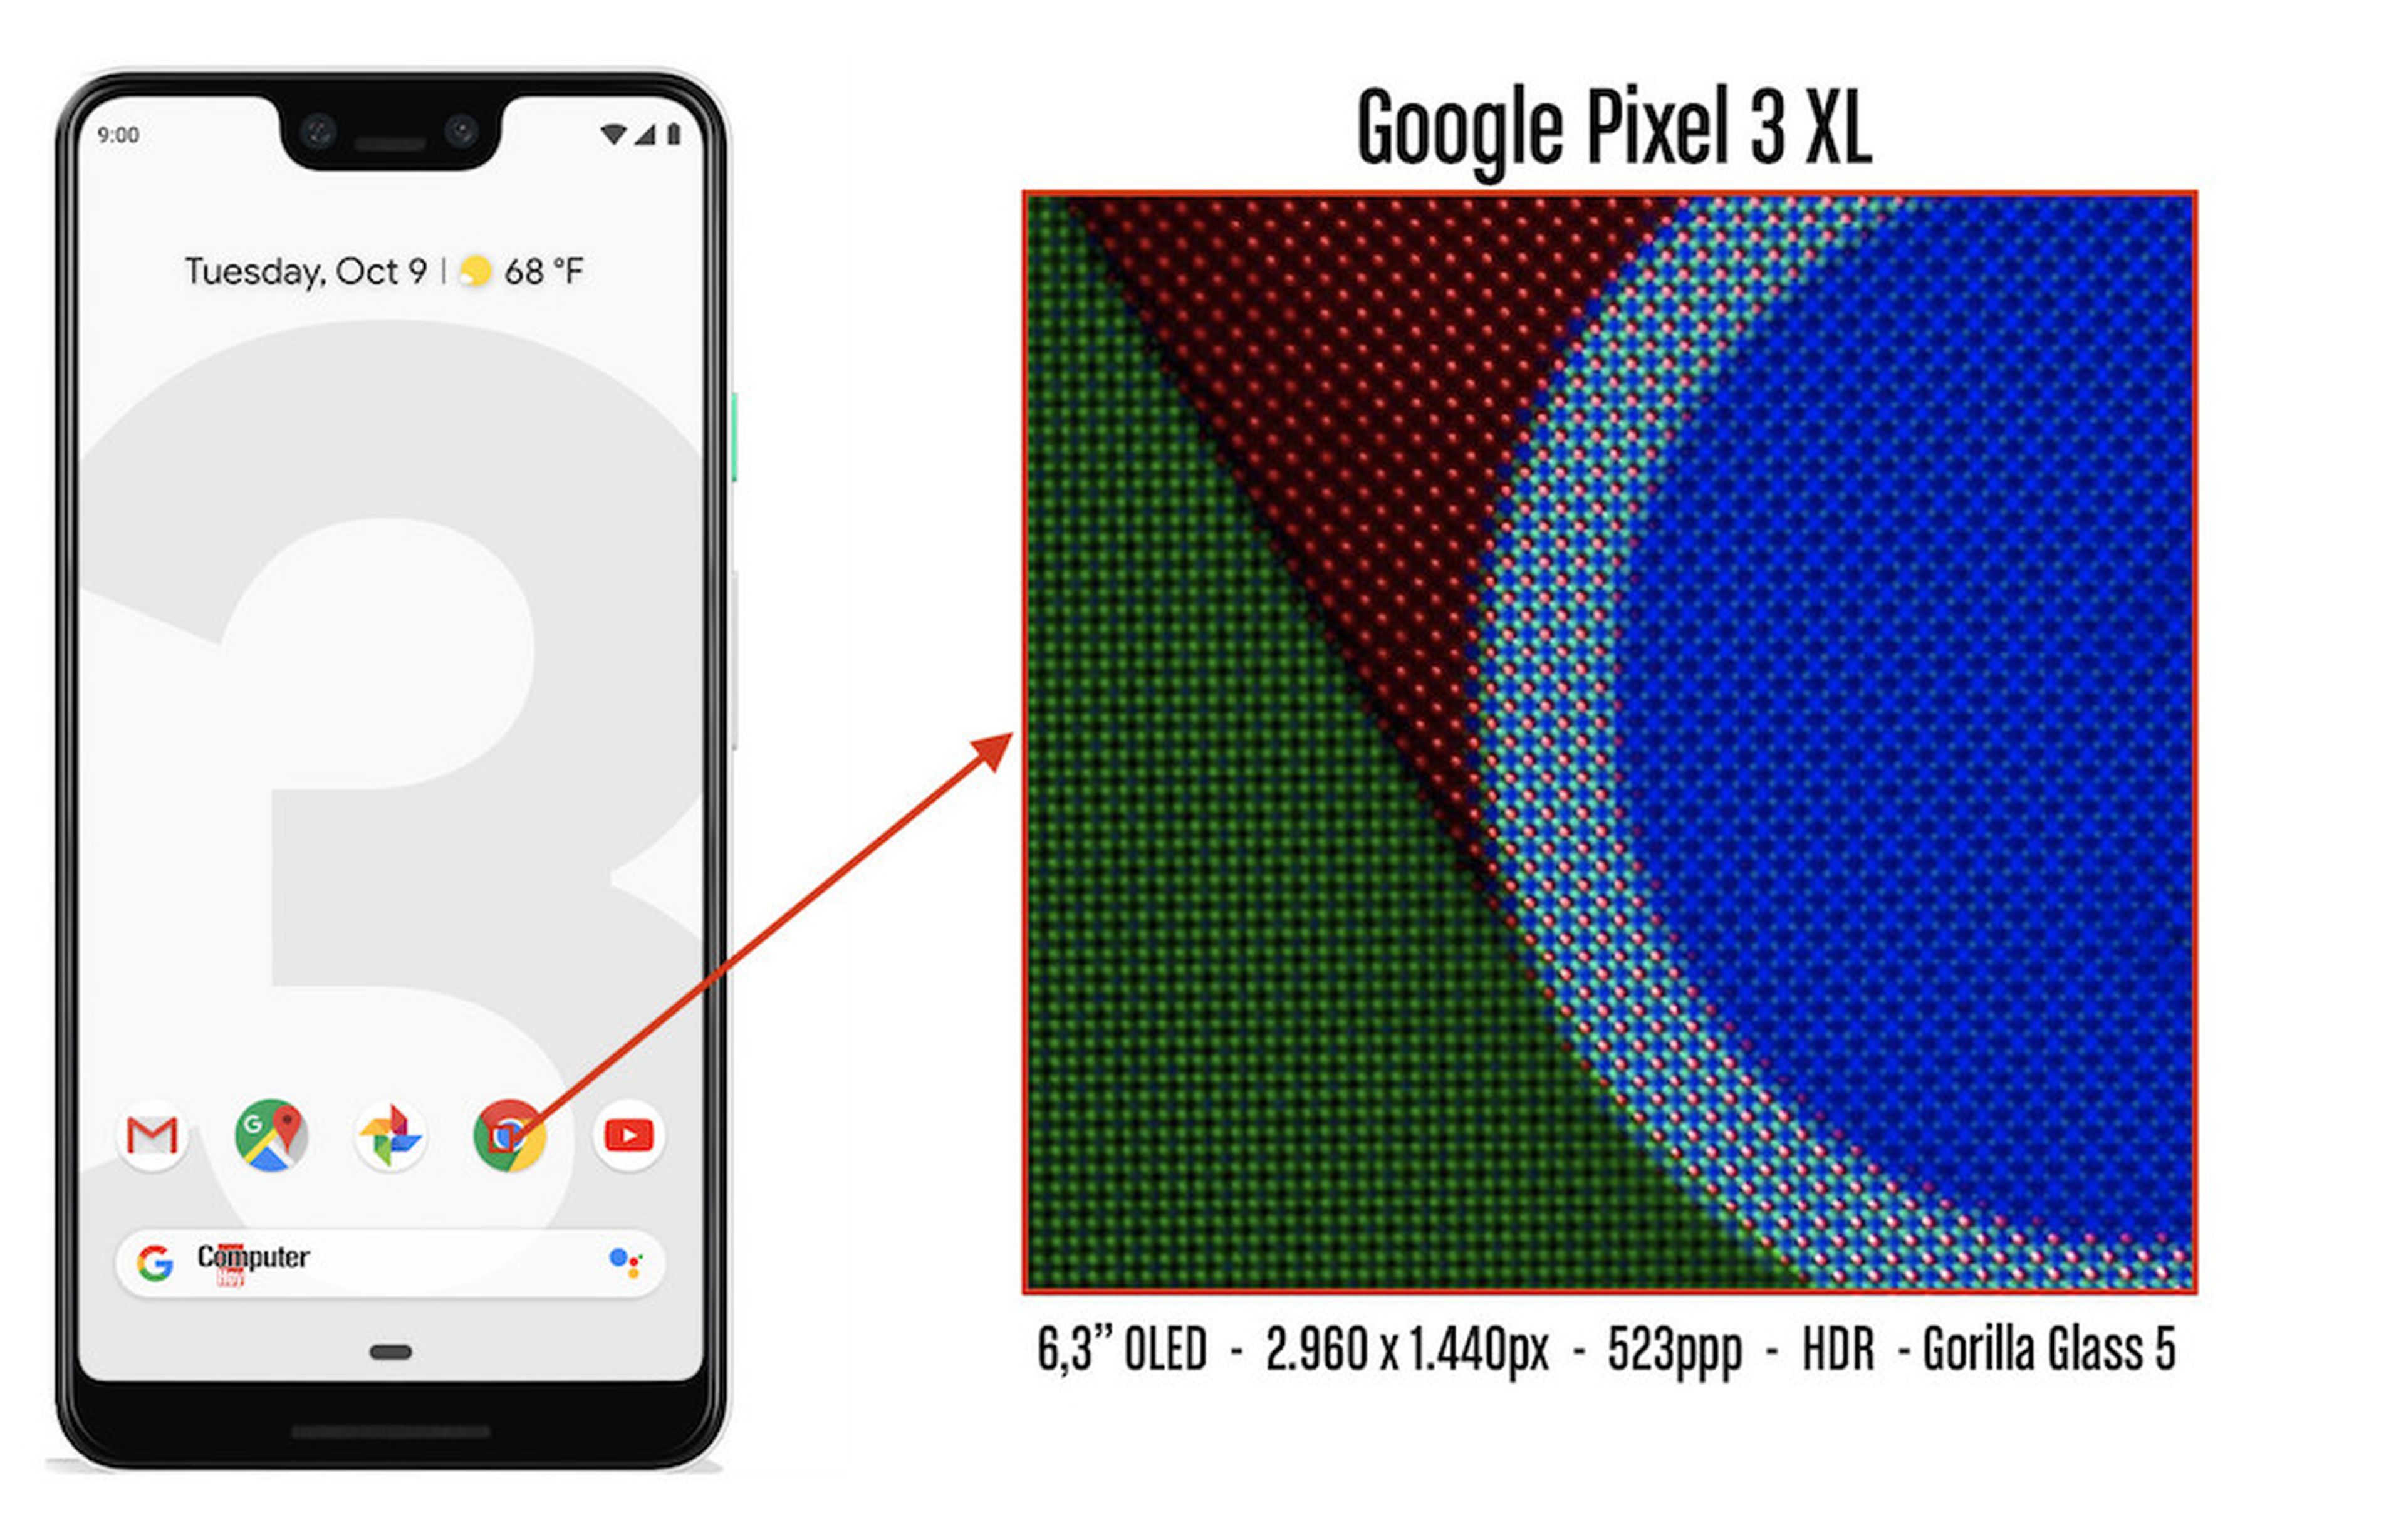 Pixeles Google Pixel 3 XL